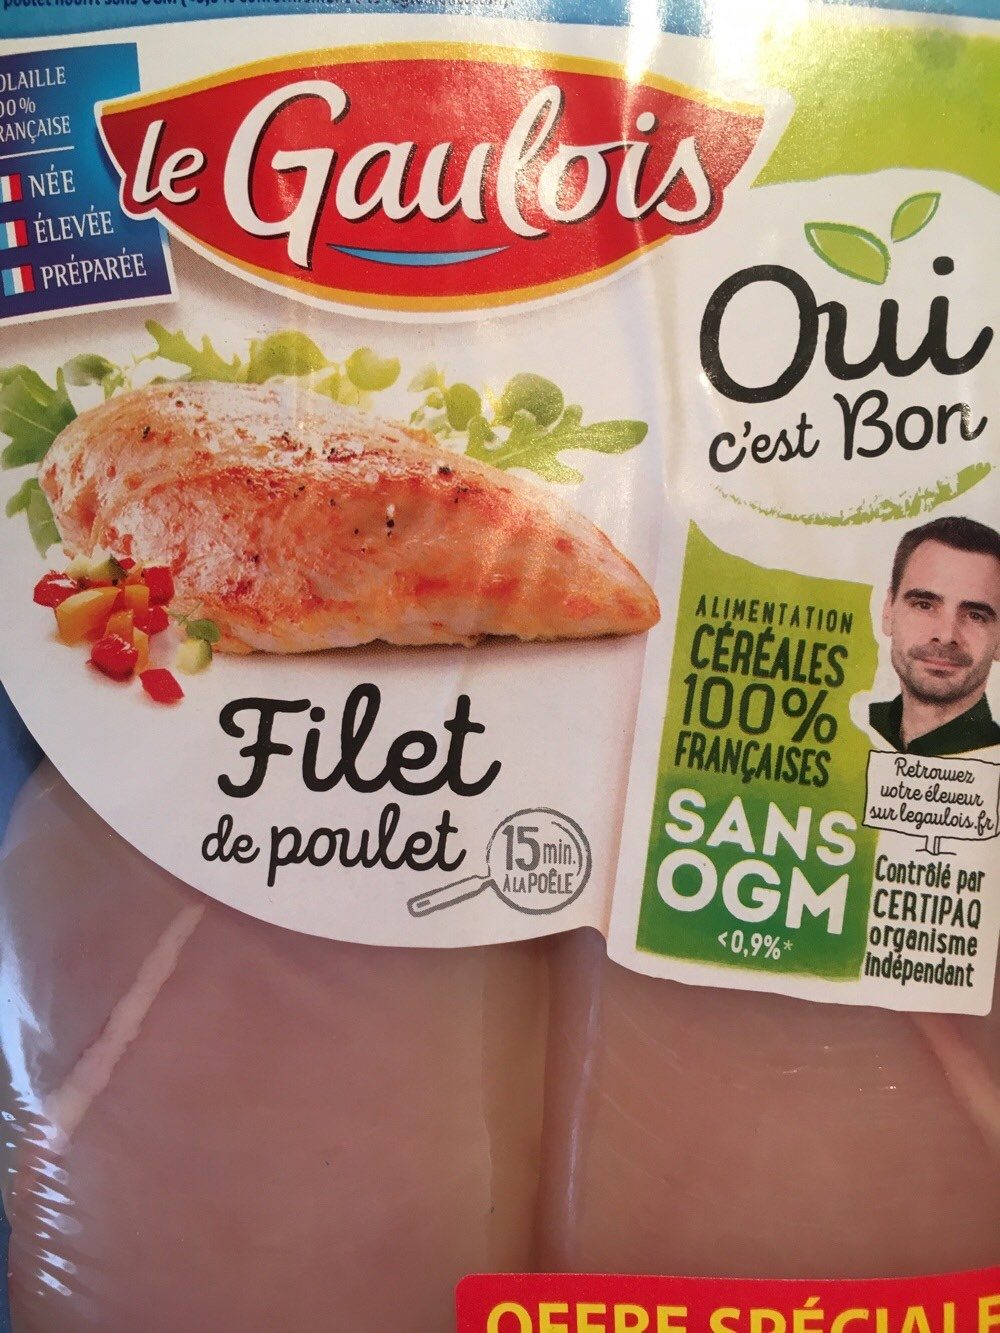 le gaulois - filet de poulet - Producto - fr